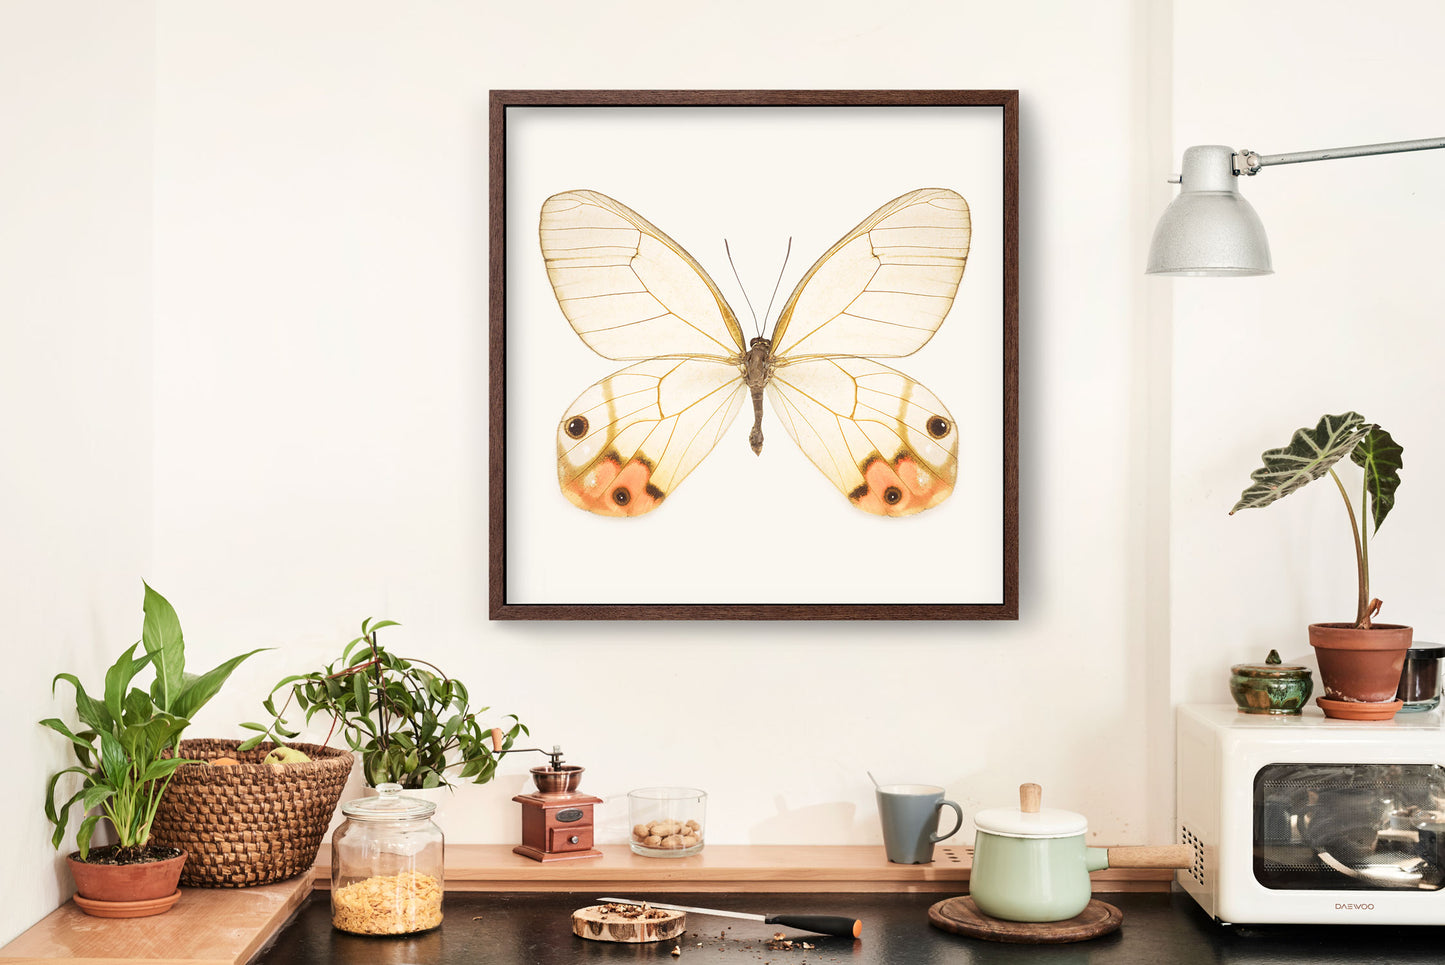 SQ Butterfly No. 2 - Orange Glasswing Butterfly